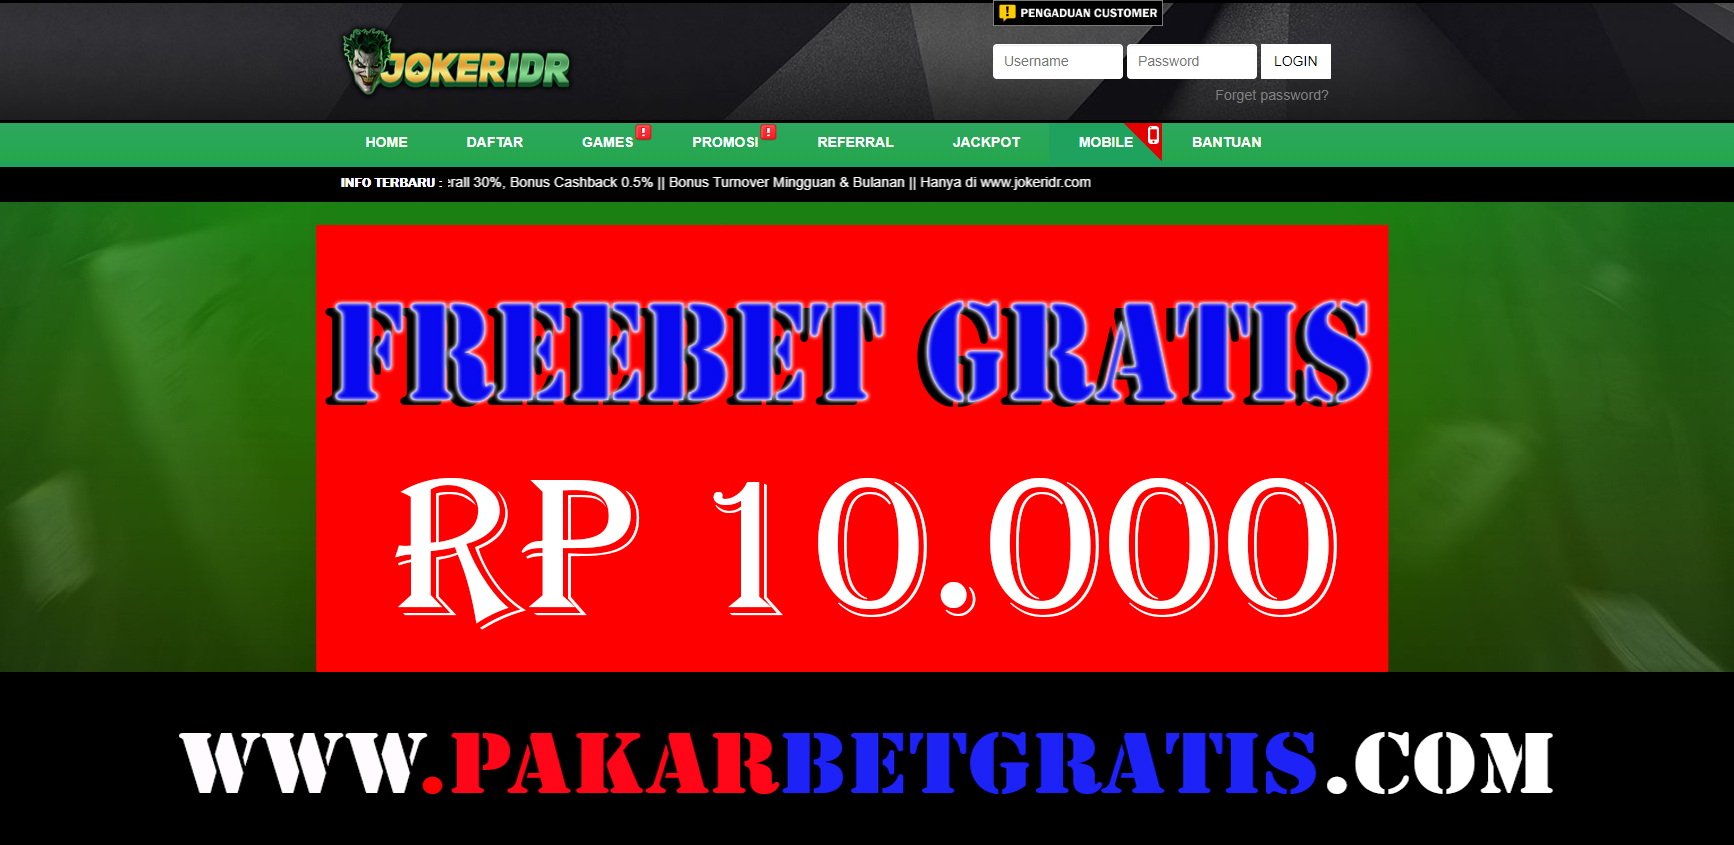 Freebet gratis JokerIDr Gratis RP 10.000